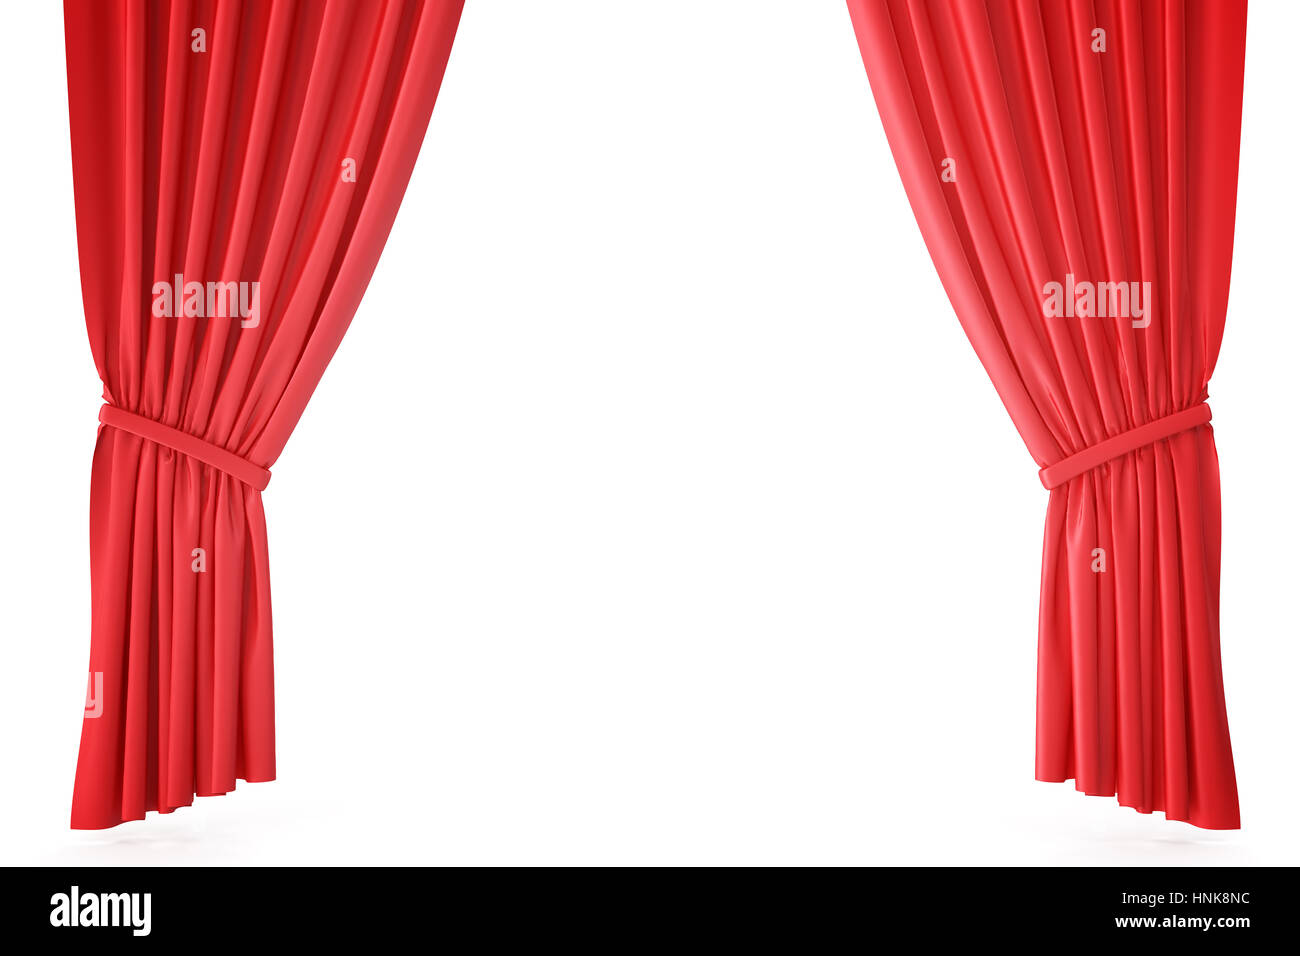 Rideaux de scène en velours rouge cramoisi, draperie de théâtre. Des rideaux de soie rouge classique, rideau de théâtre. Le rendu 3D Banque D'Images